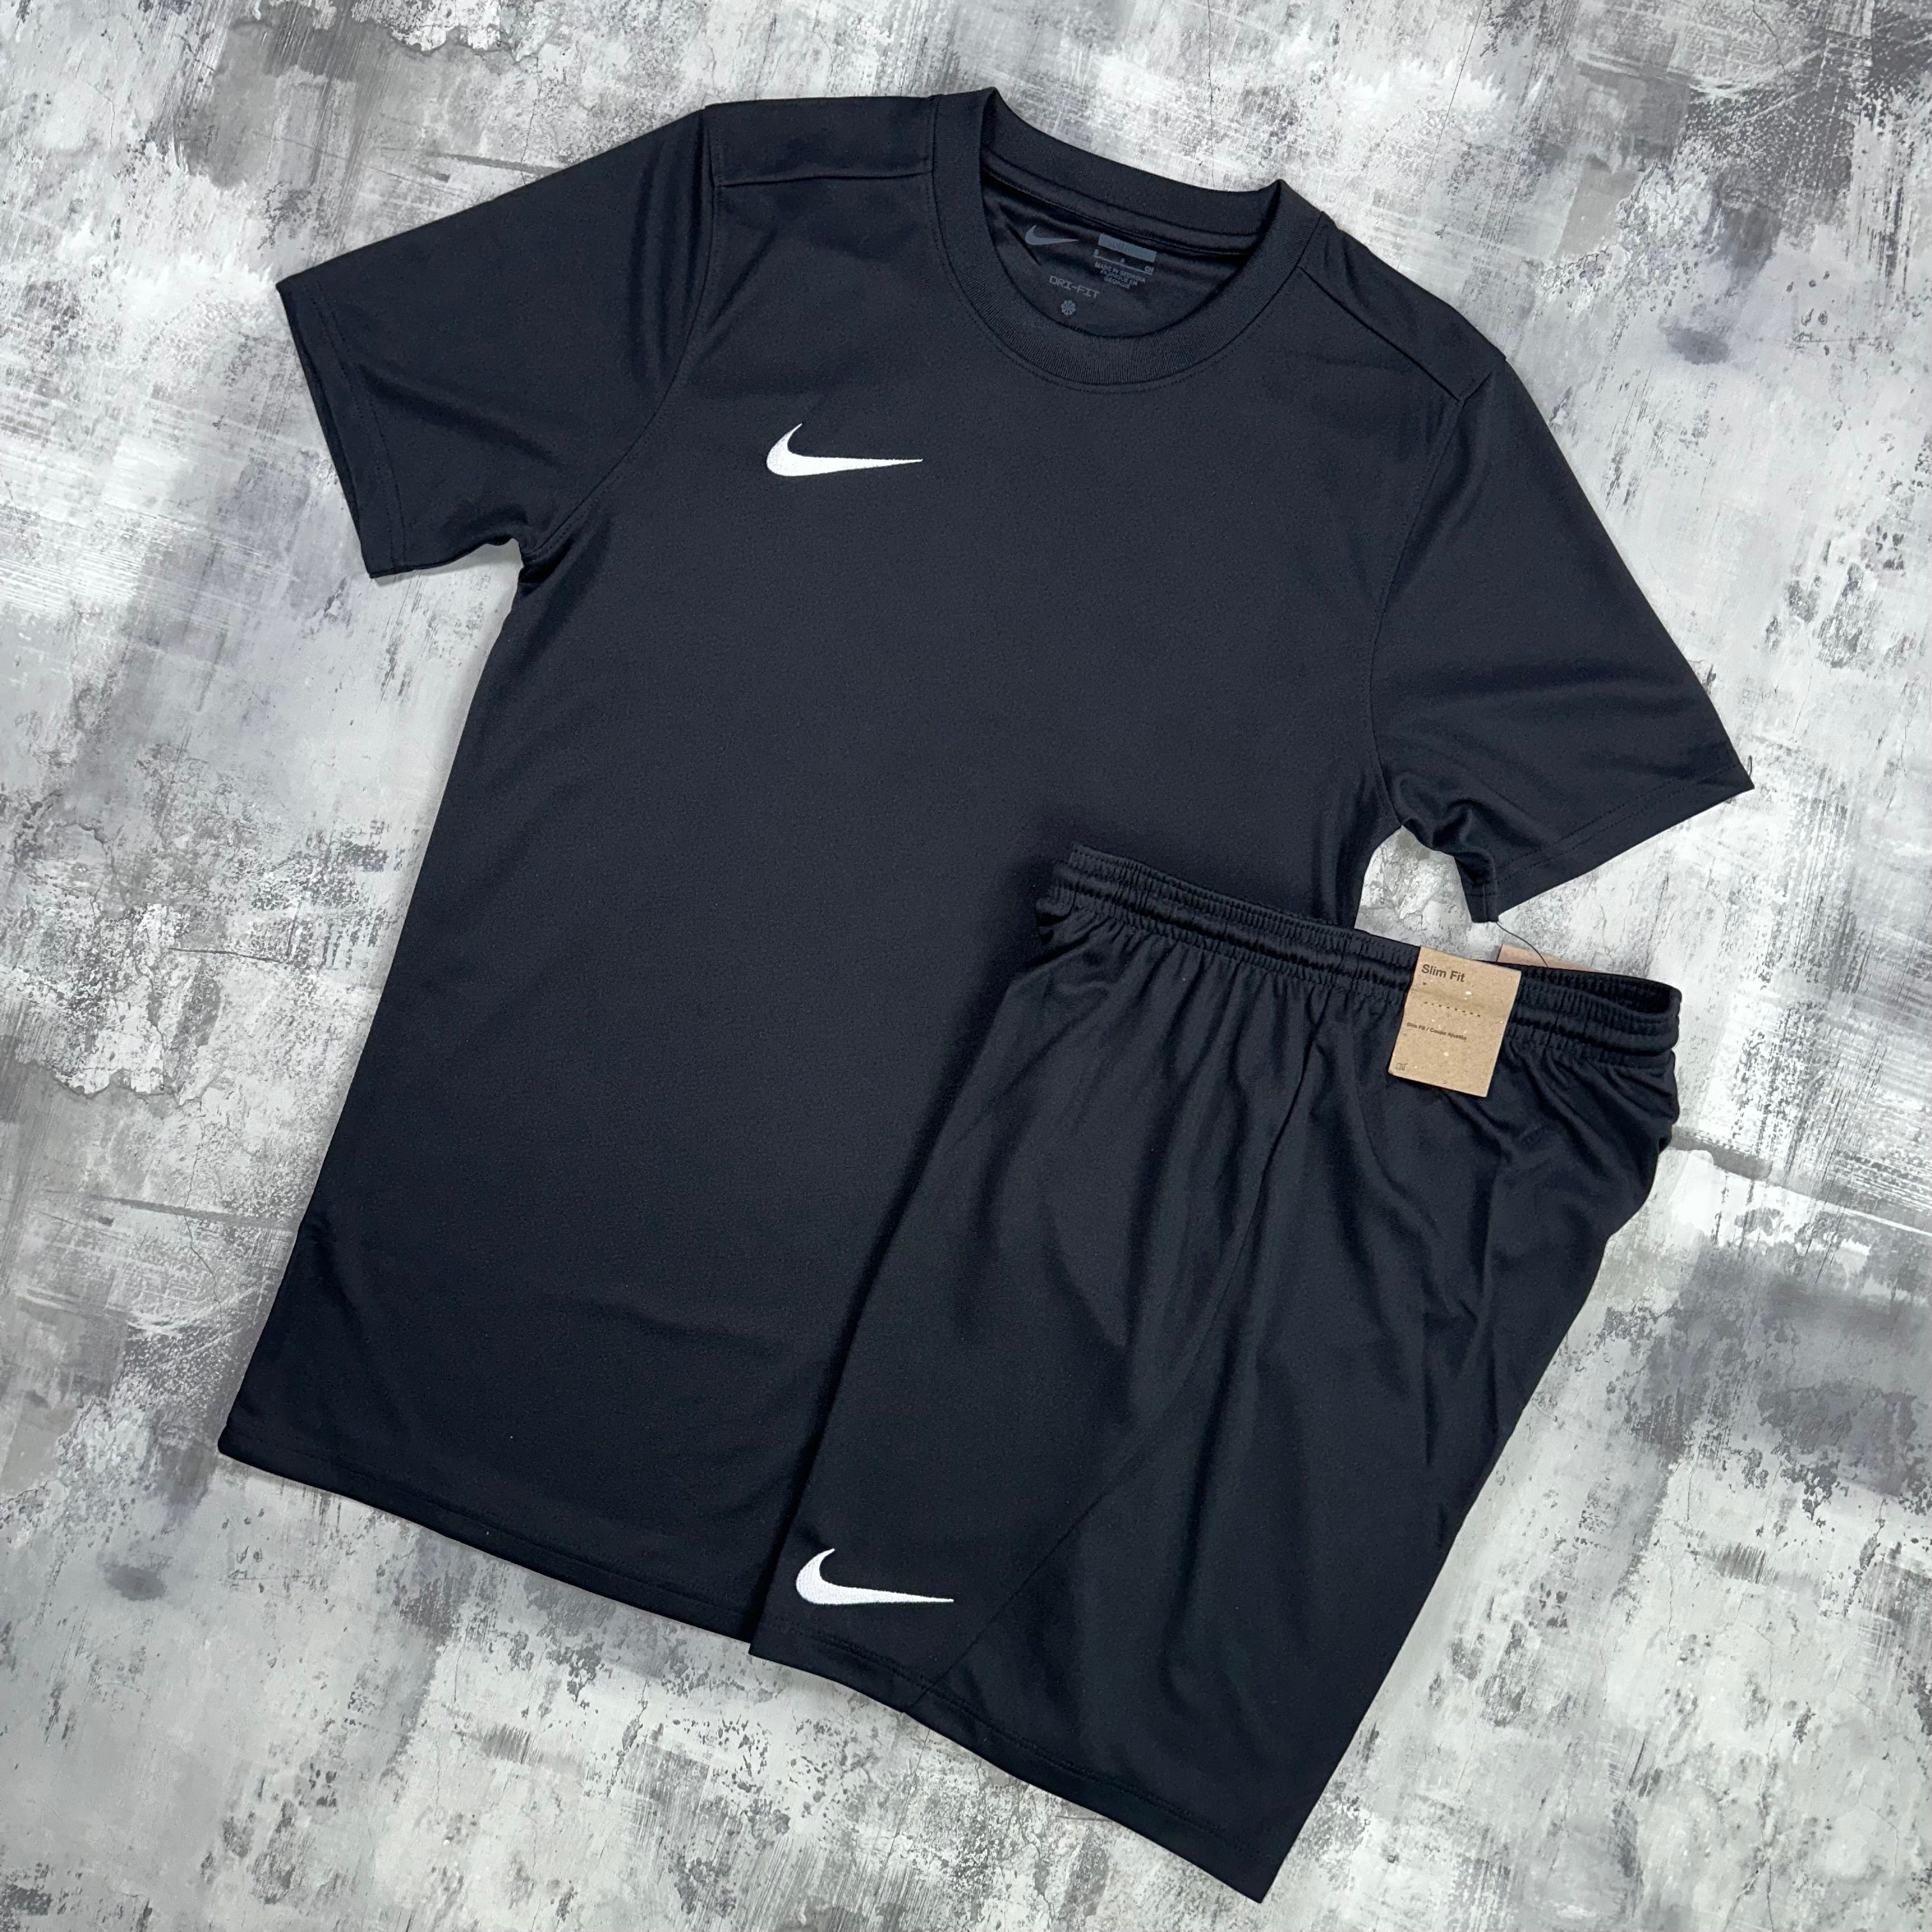 Nike Dri-Fit set Black - t-shirt & shorts